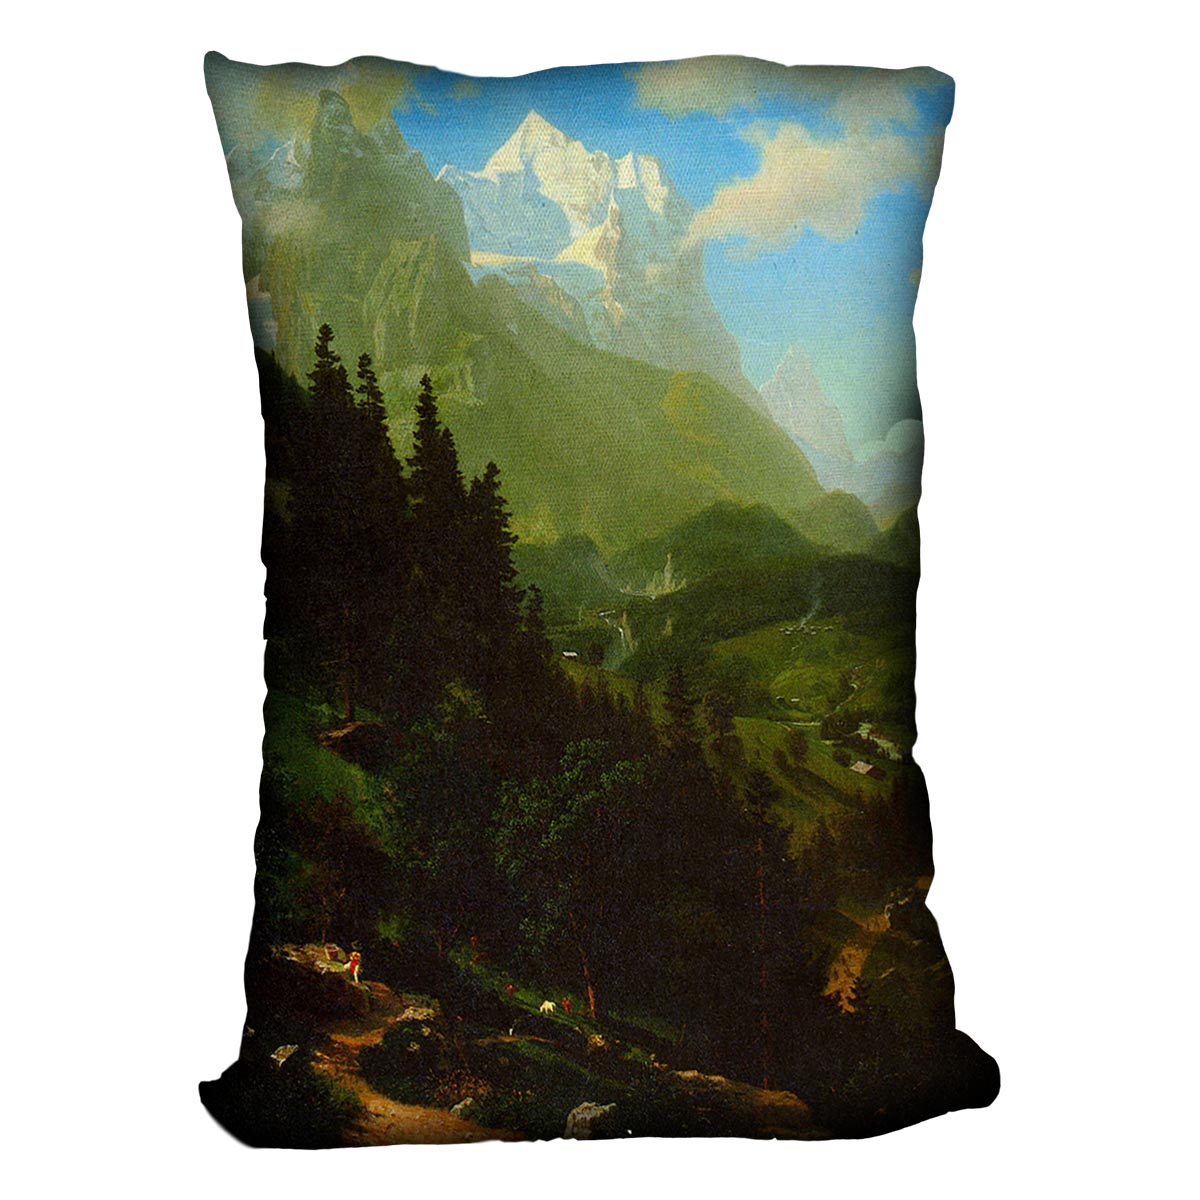 Matterhorn by Bierstadt Cushion - Canvas Art Rocks - 4